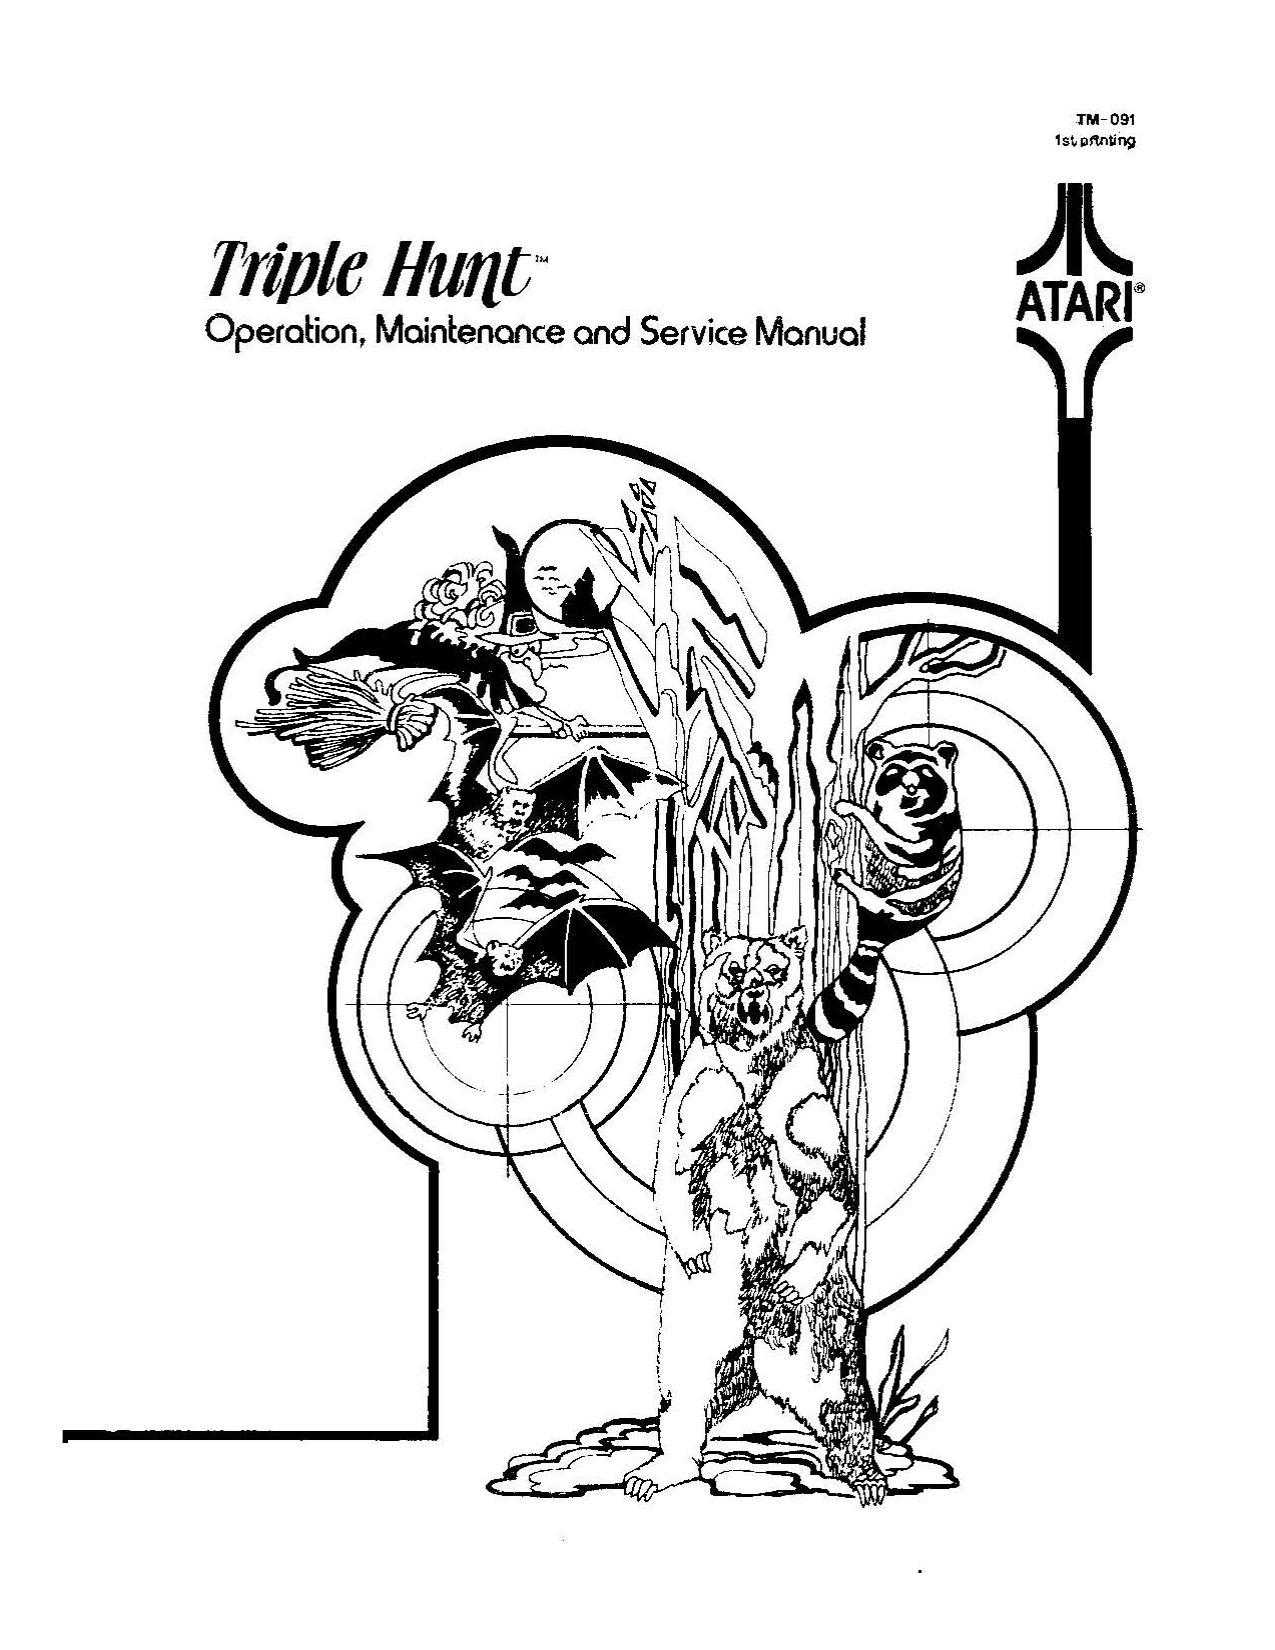 Triple Hunt (TM-091 1st Printing) (Op-Maint-Serv) (U)